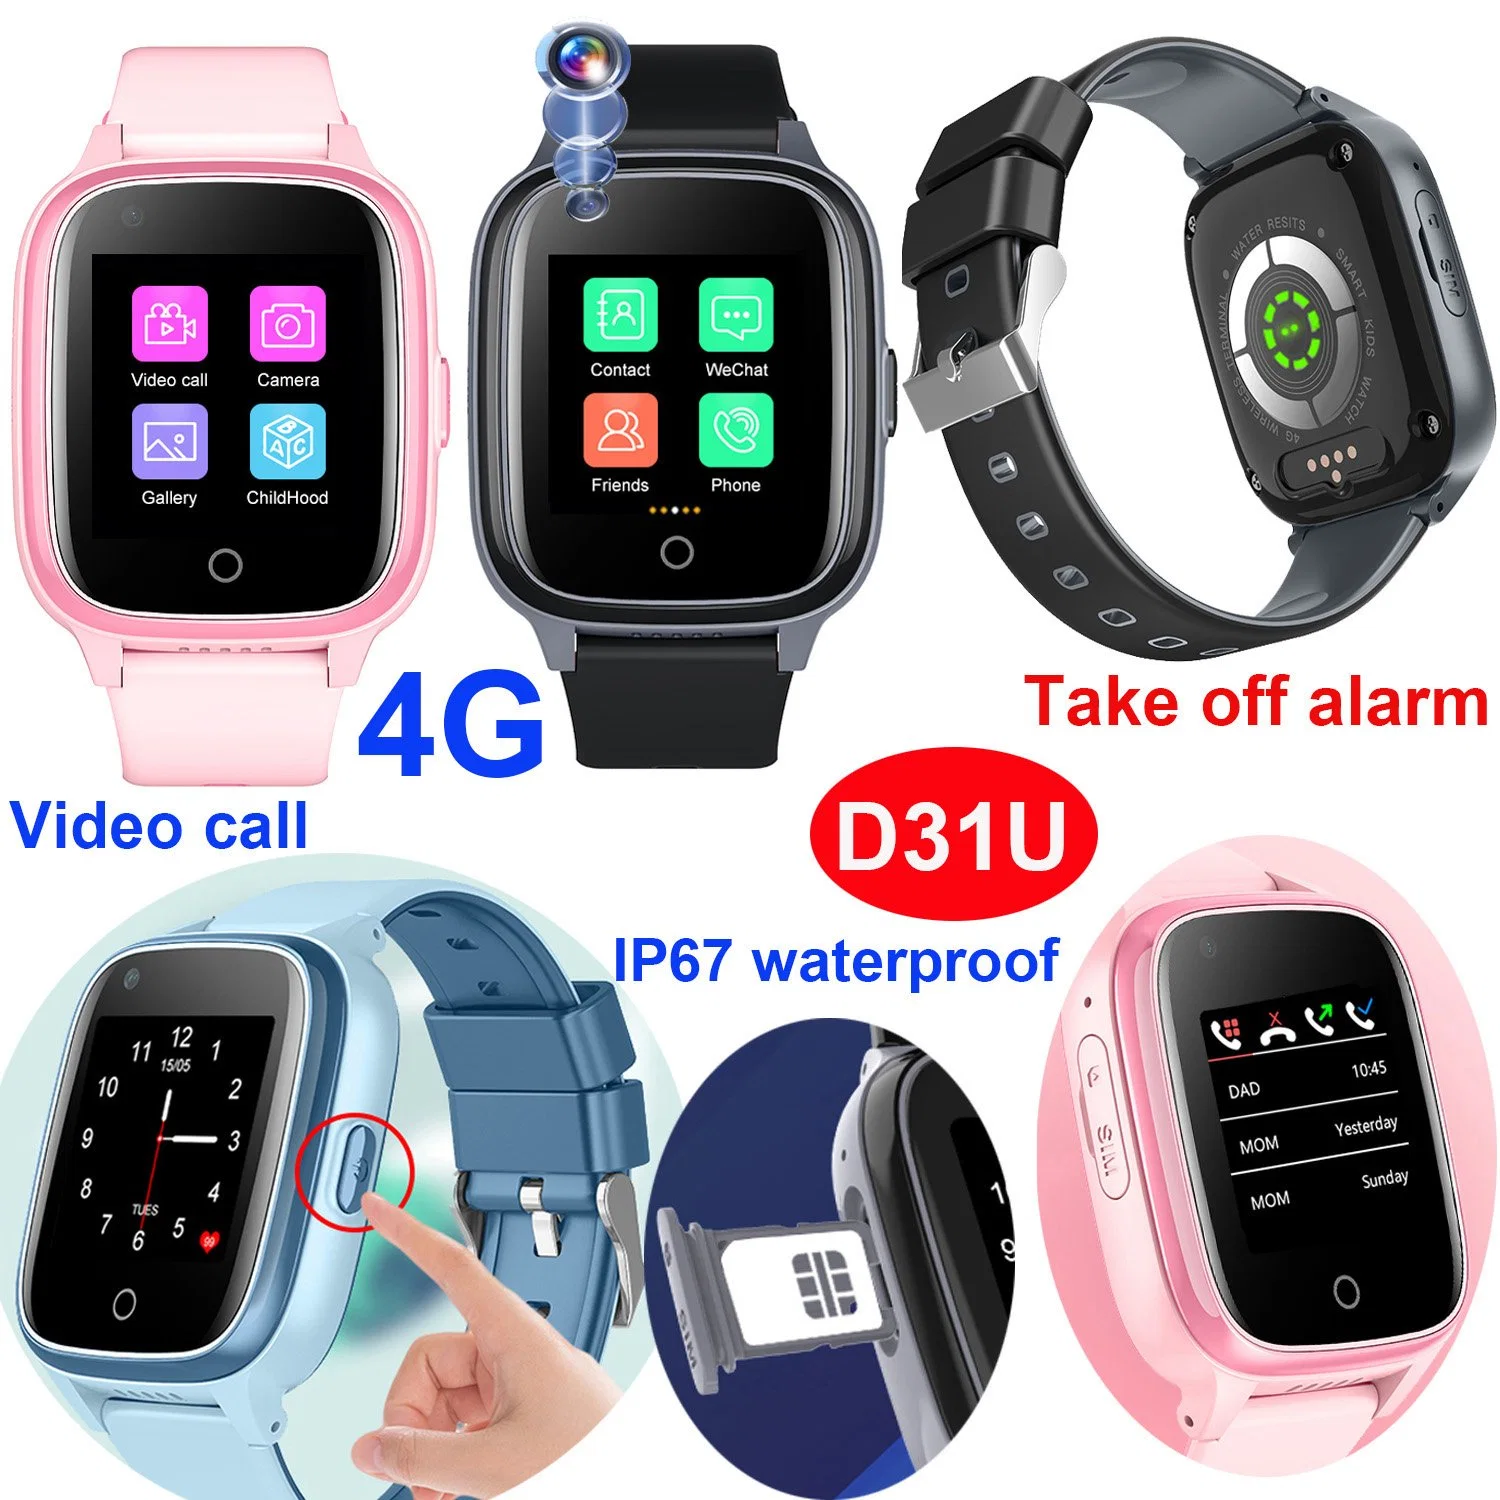 Alarme de descolagem à prova de água 4G IP67, vendido a quente, para crianças Chamada SOS Gift Smart Watch GPS Tracker Telefone com Vídeo Chamada para monitorização de segurança D31U